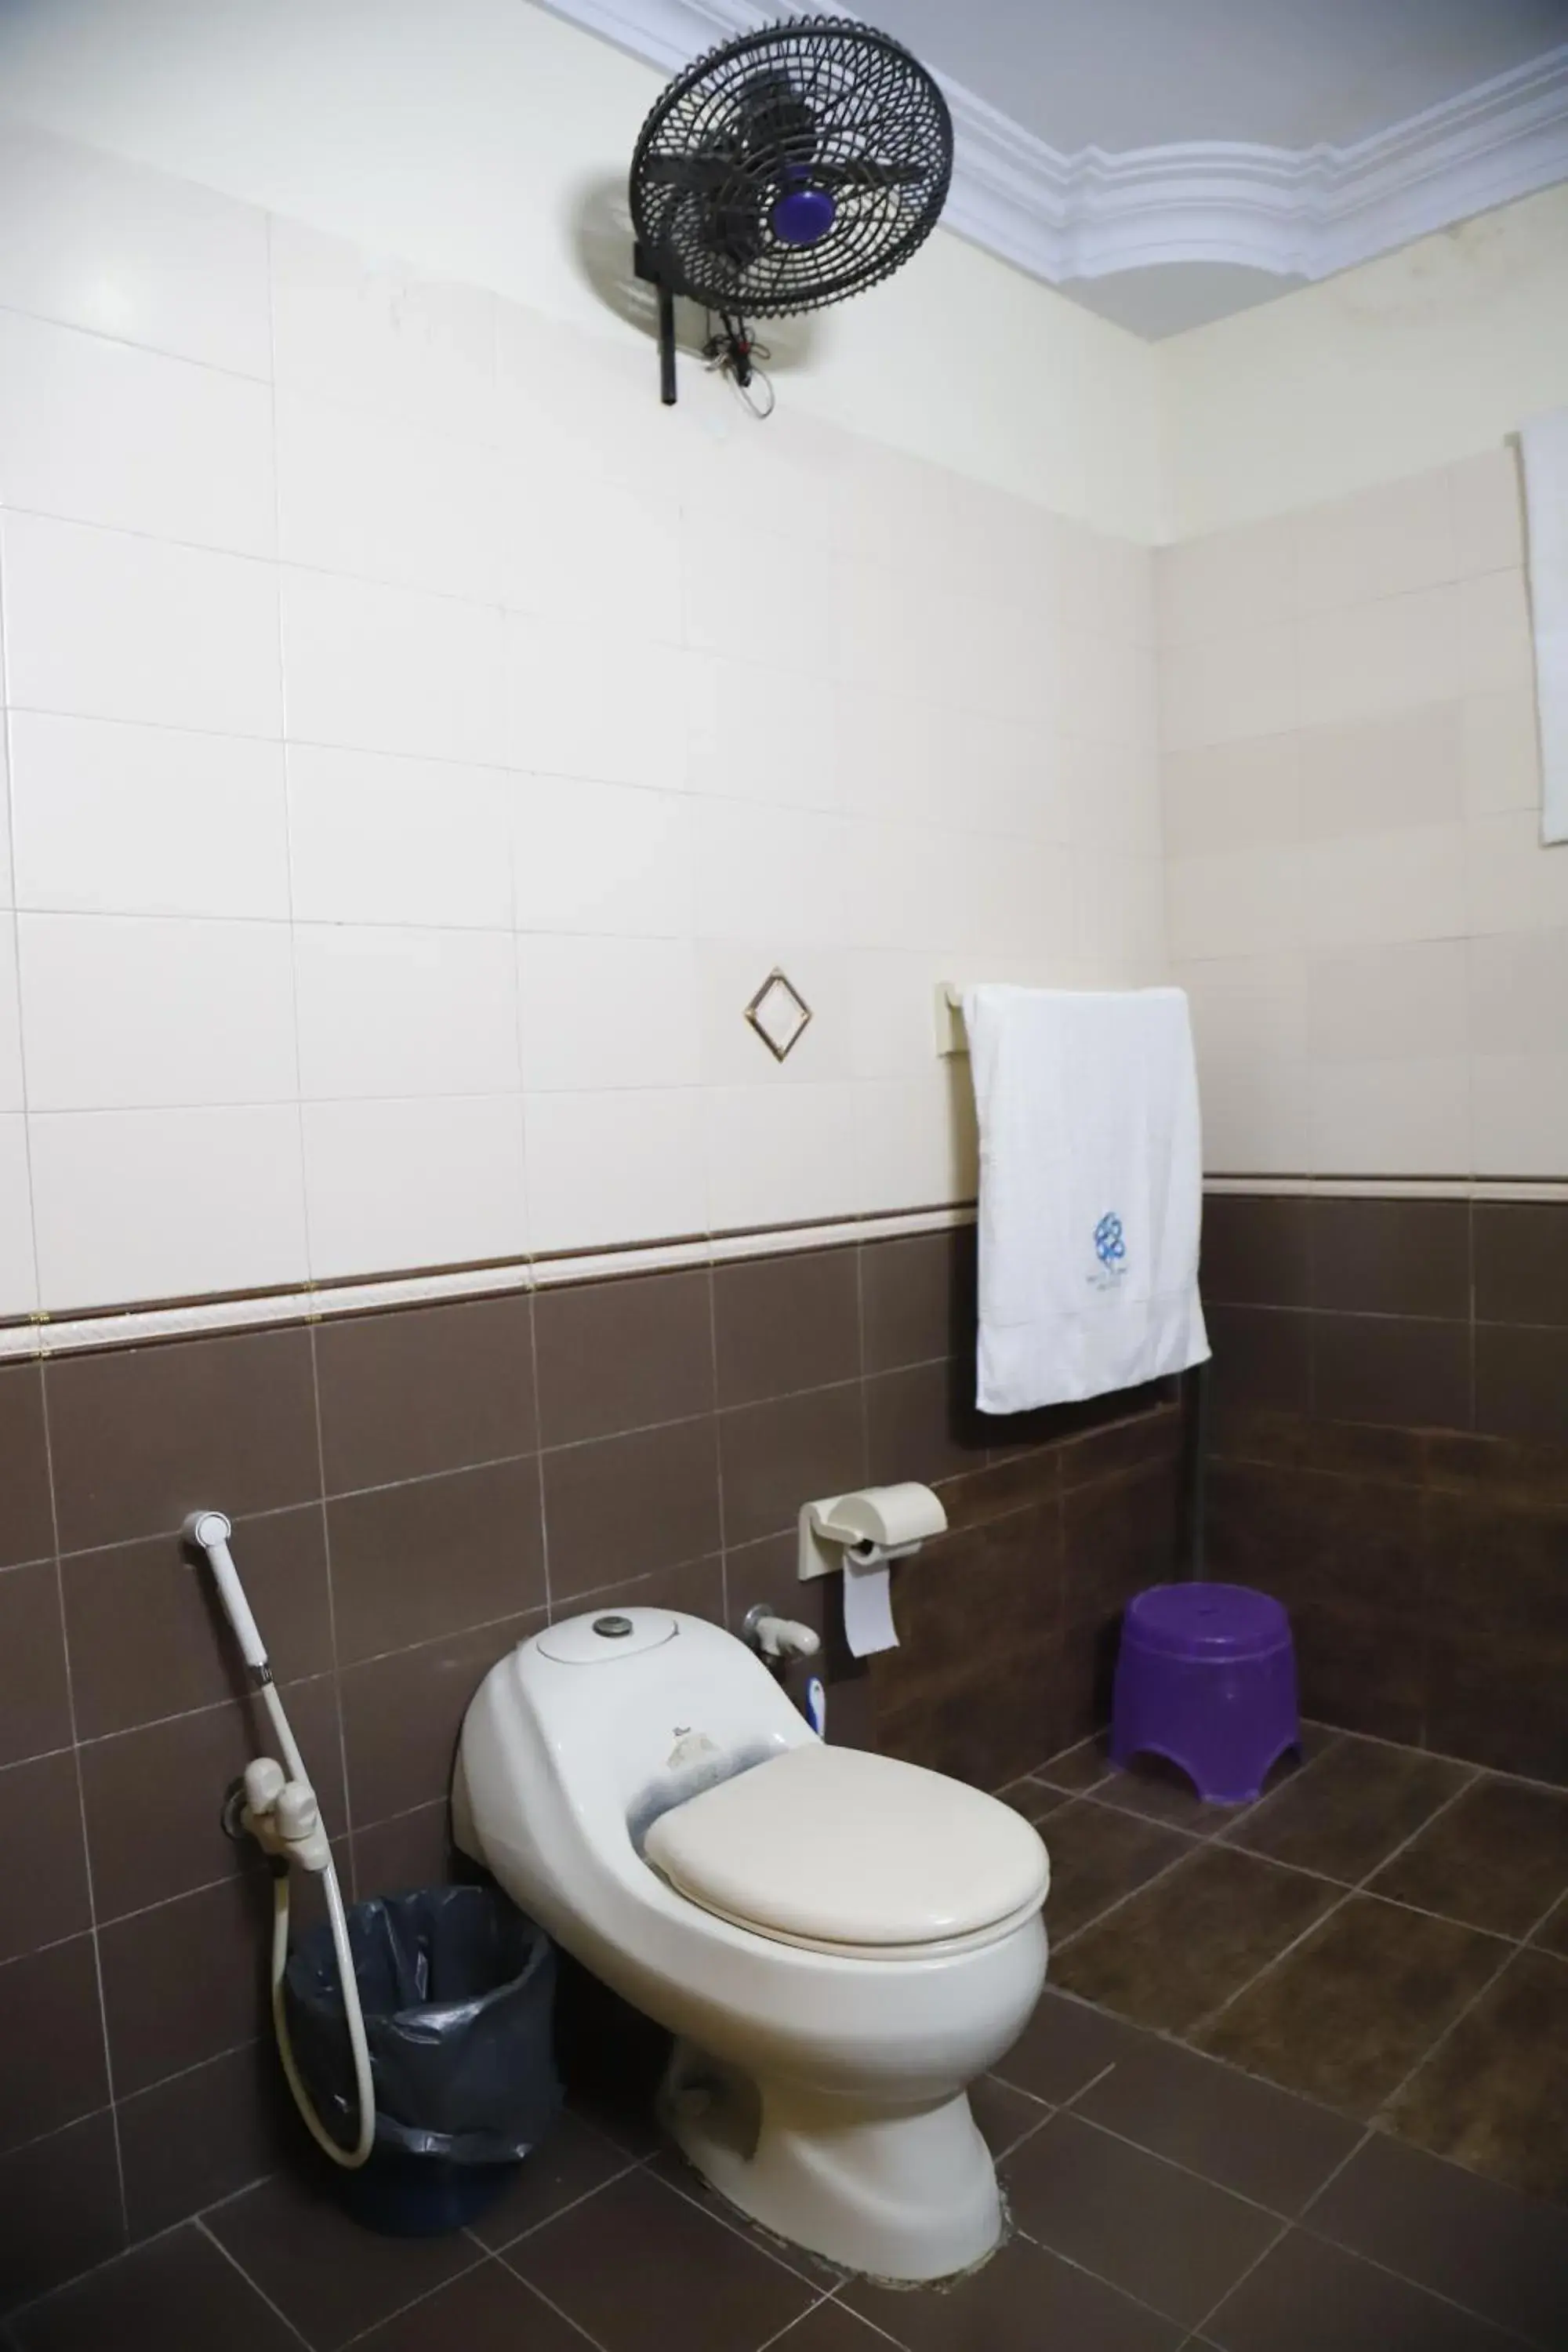 Toilet, Bathroom in Waypoint Hotel